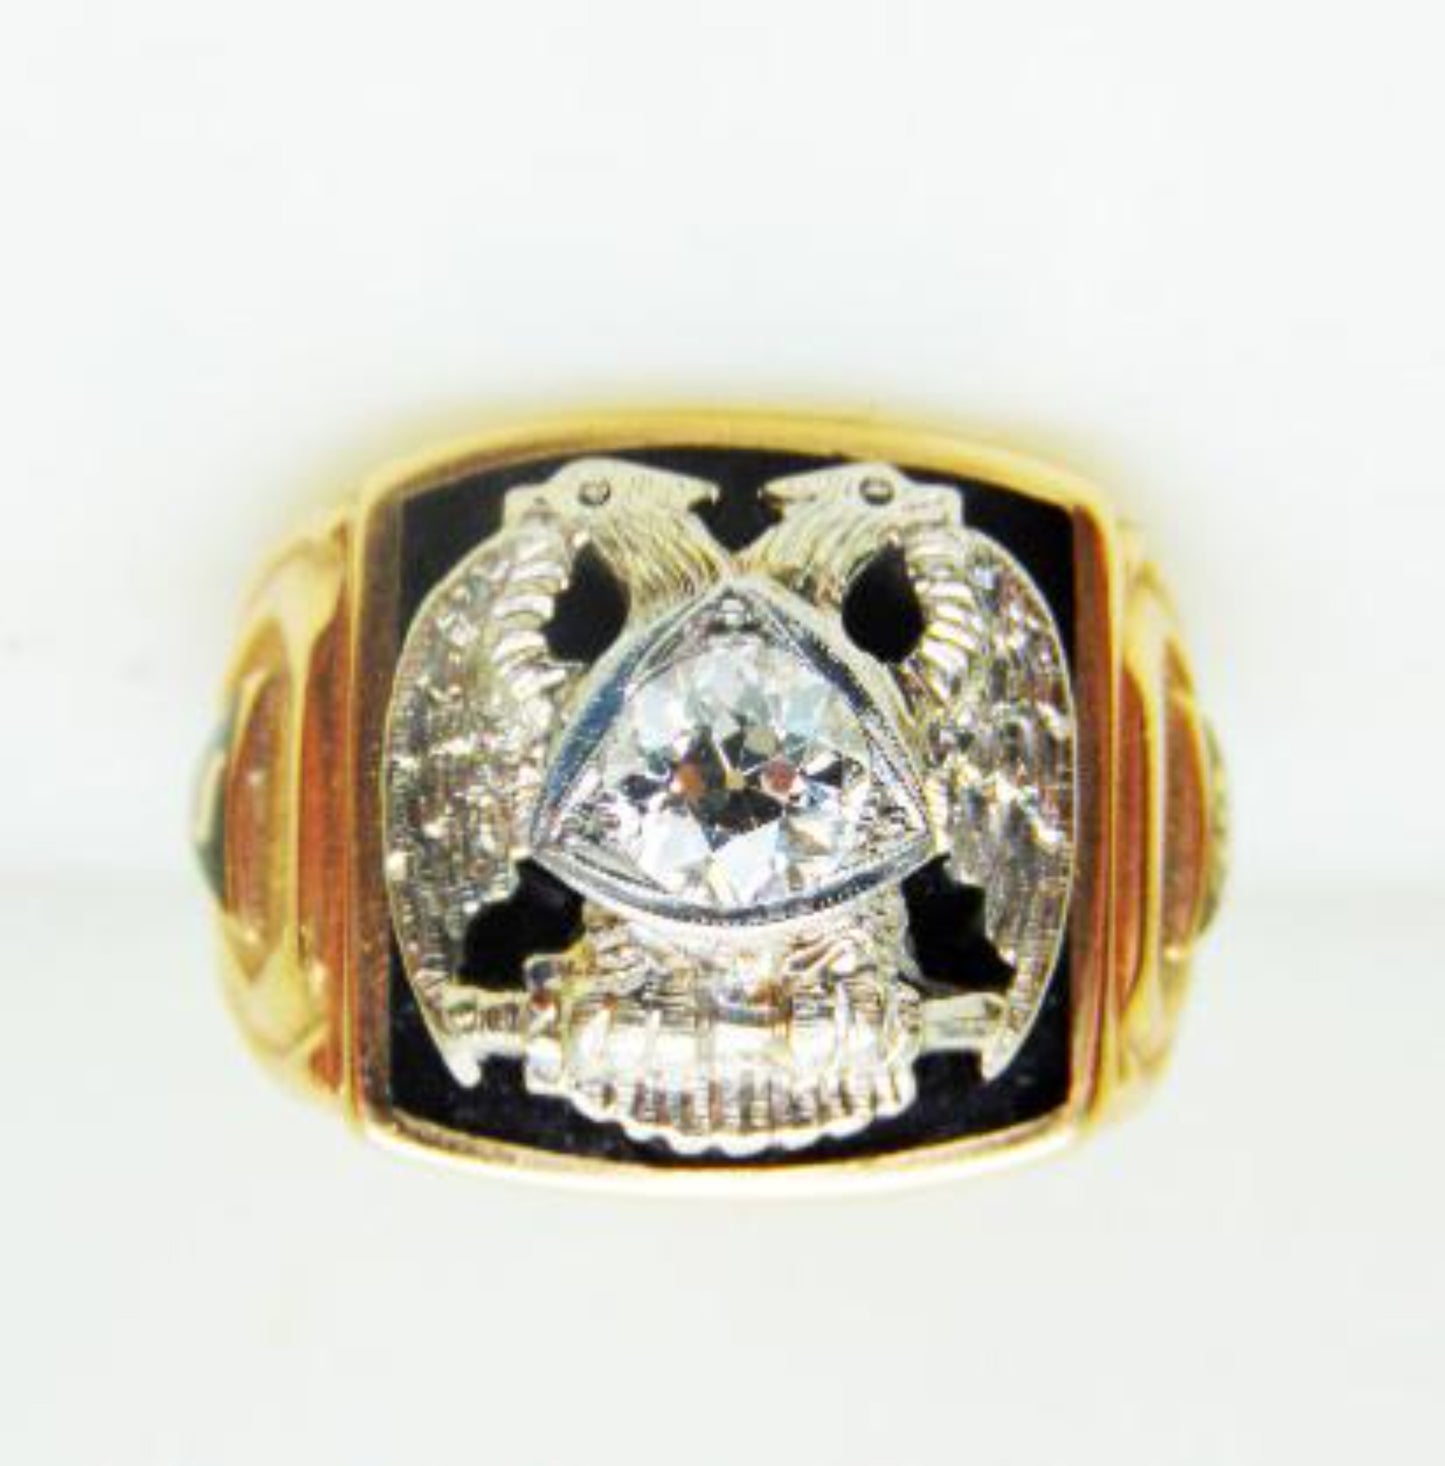 32 Degree Masonic Scottish Rite 14K Yellow gold and Platinum ring with Diamond